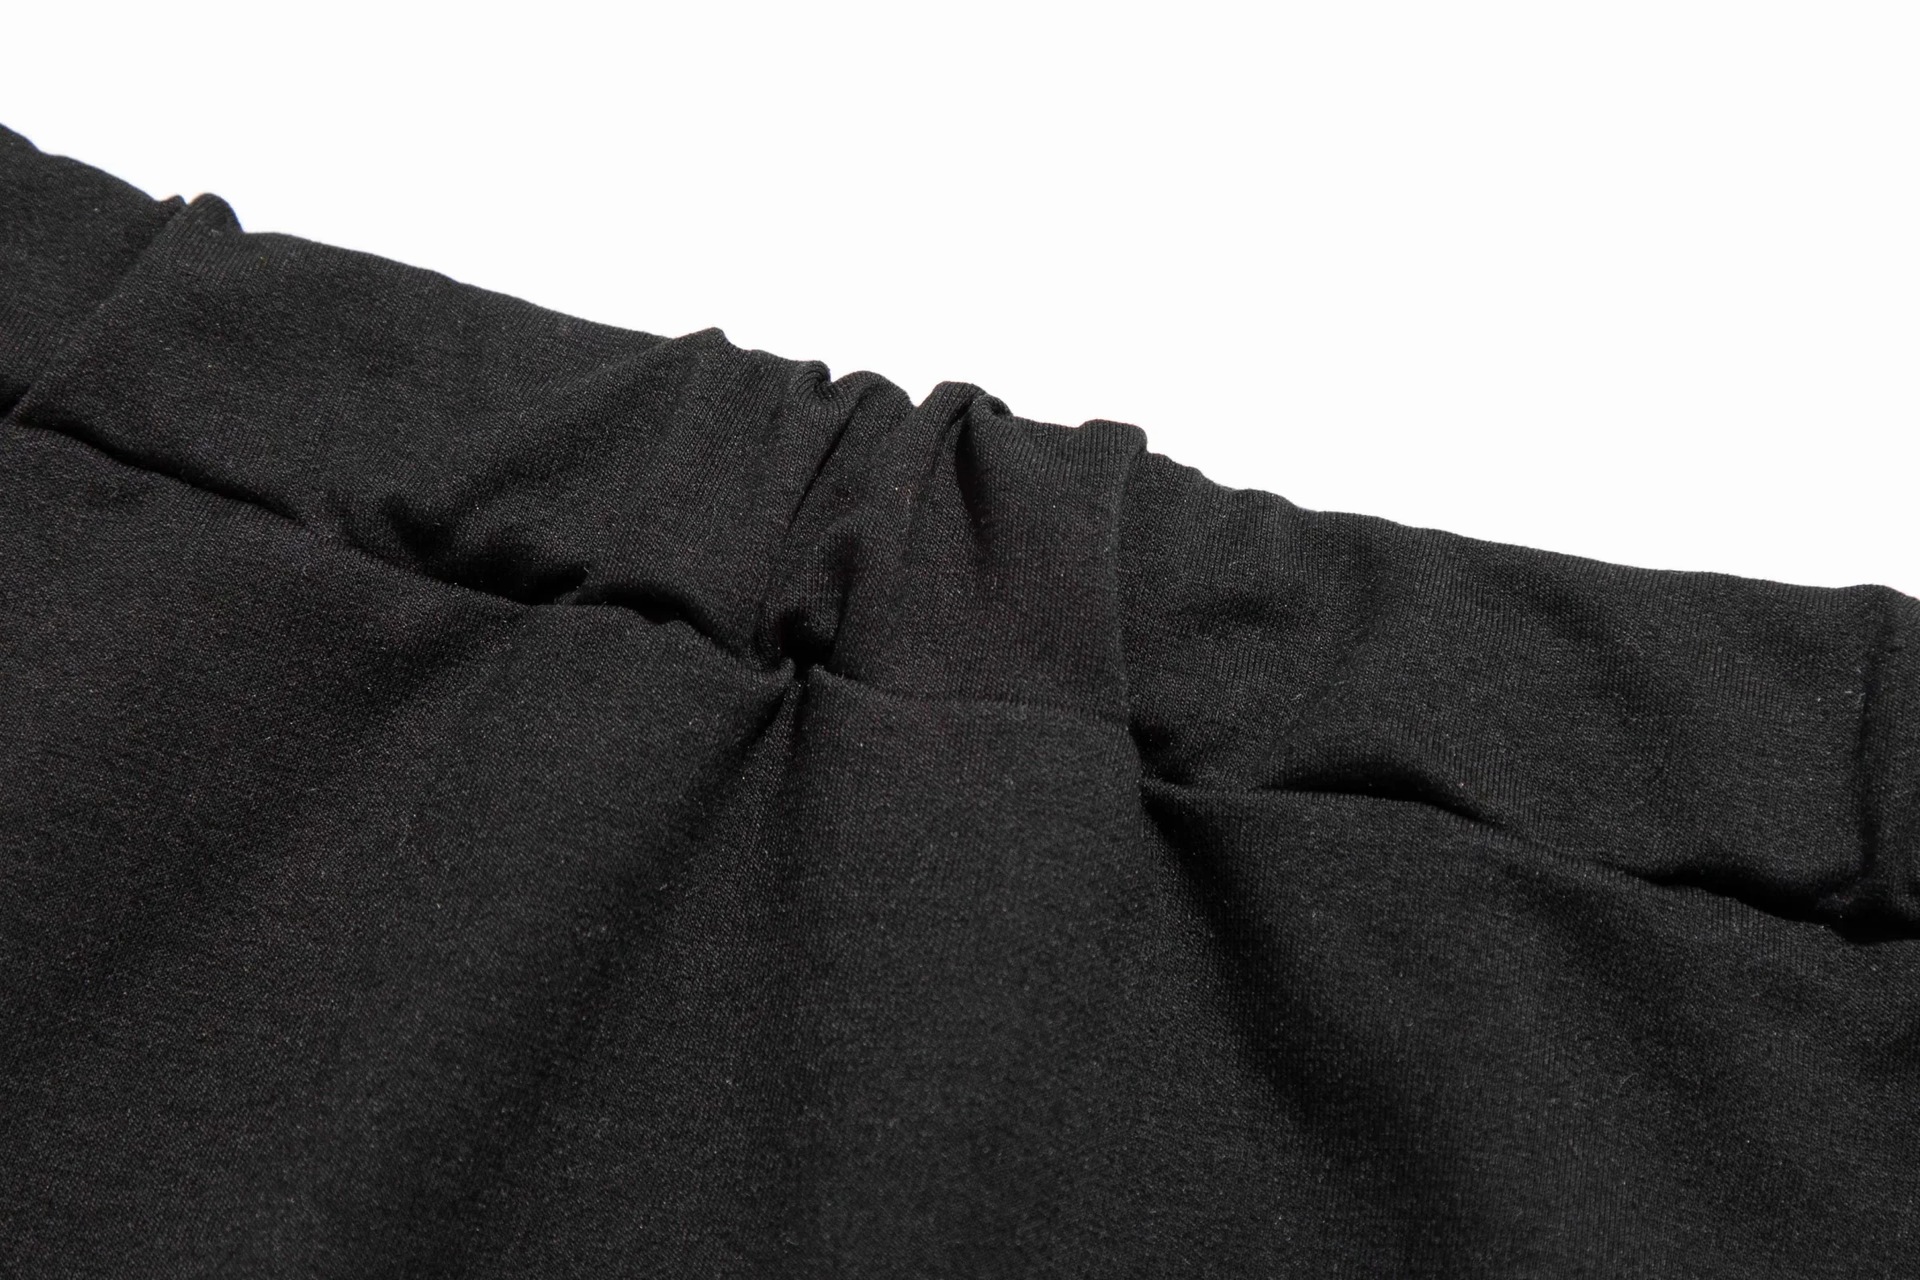 short sweatshirt high waist skirt two-piece set NSAC32701